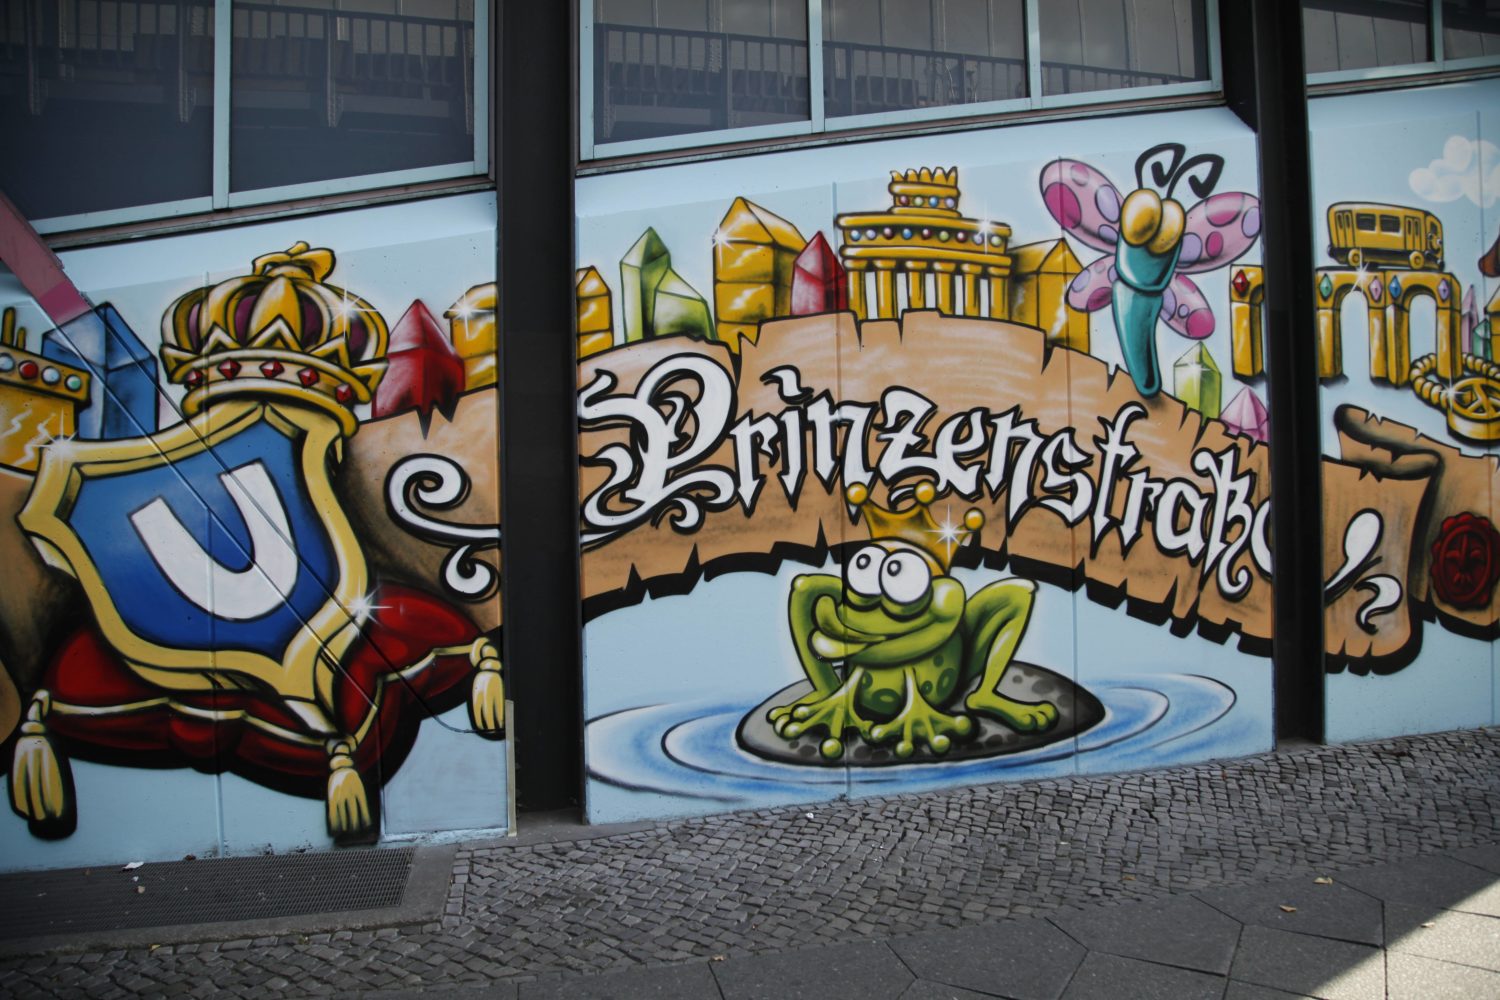 Märchenstoff, berlinerisch interpretiert: Graffiti am U-Bahnhof Prinzenstraße. Foto: Imago Images/STPP